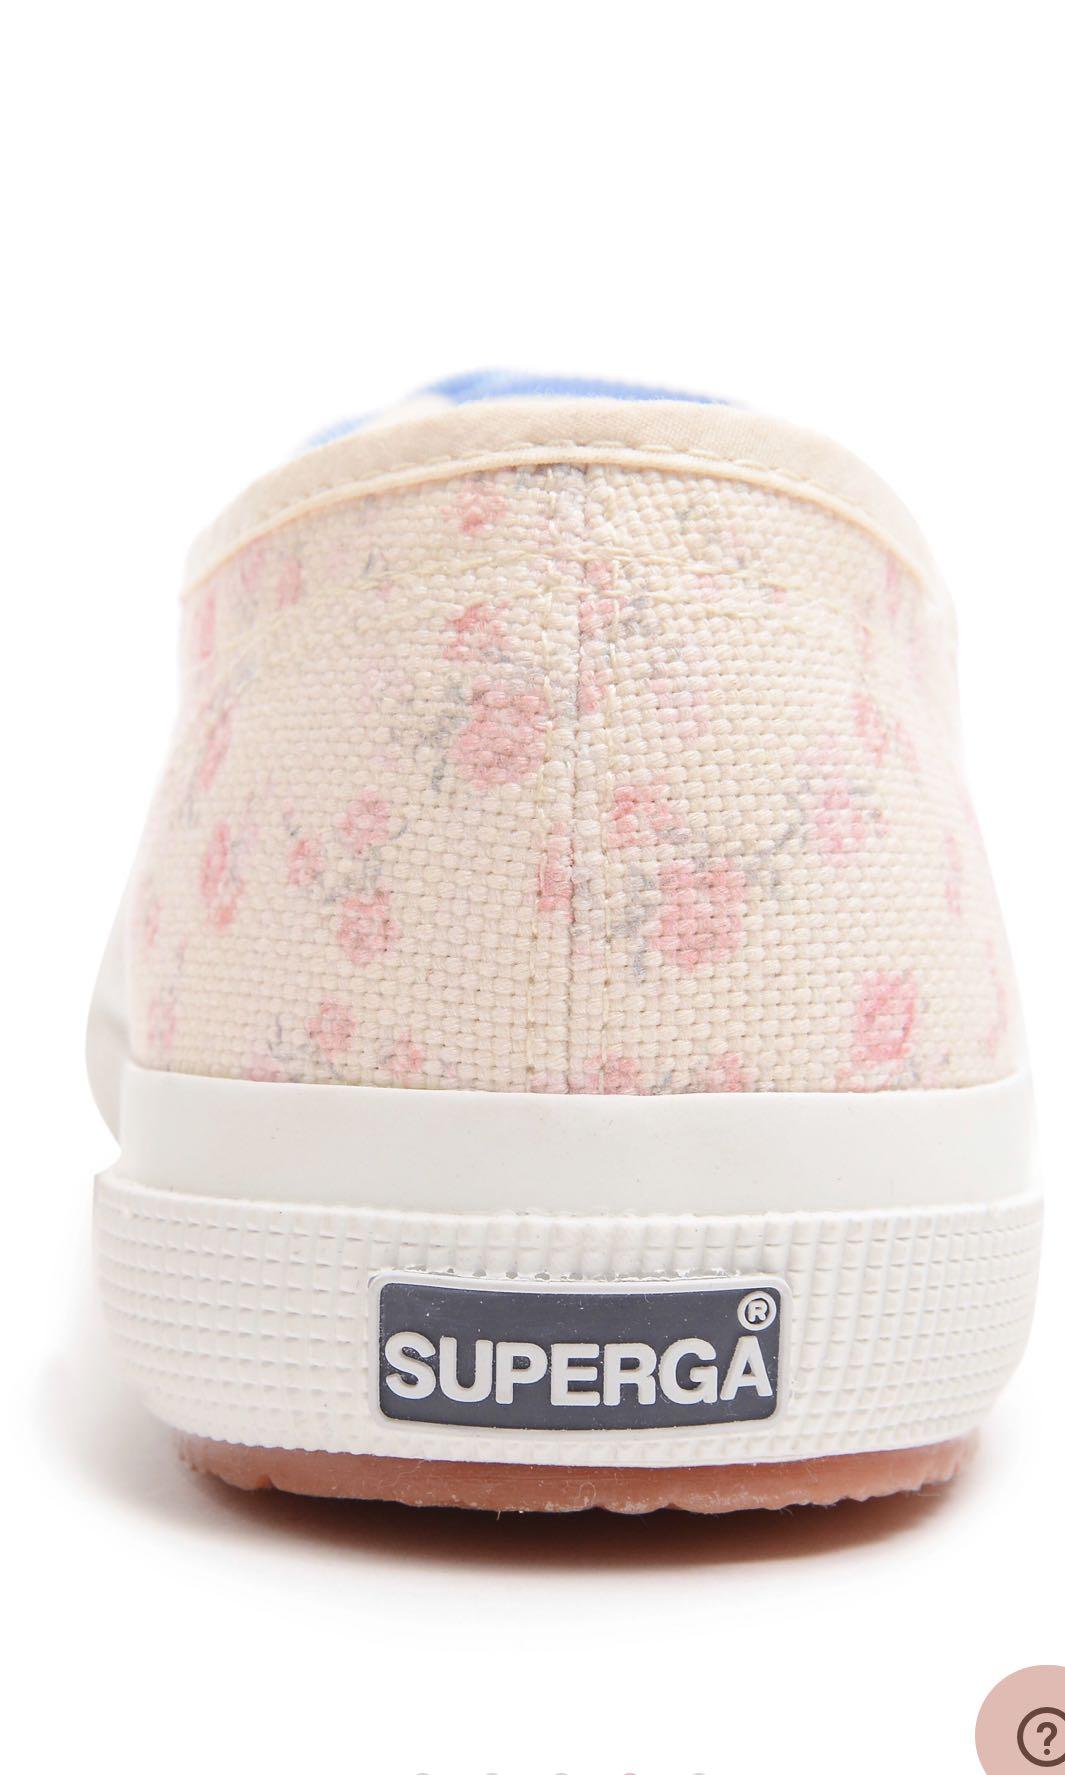 superga floral shoes